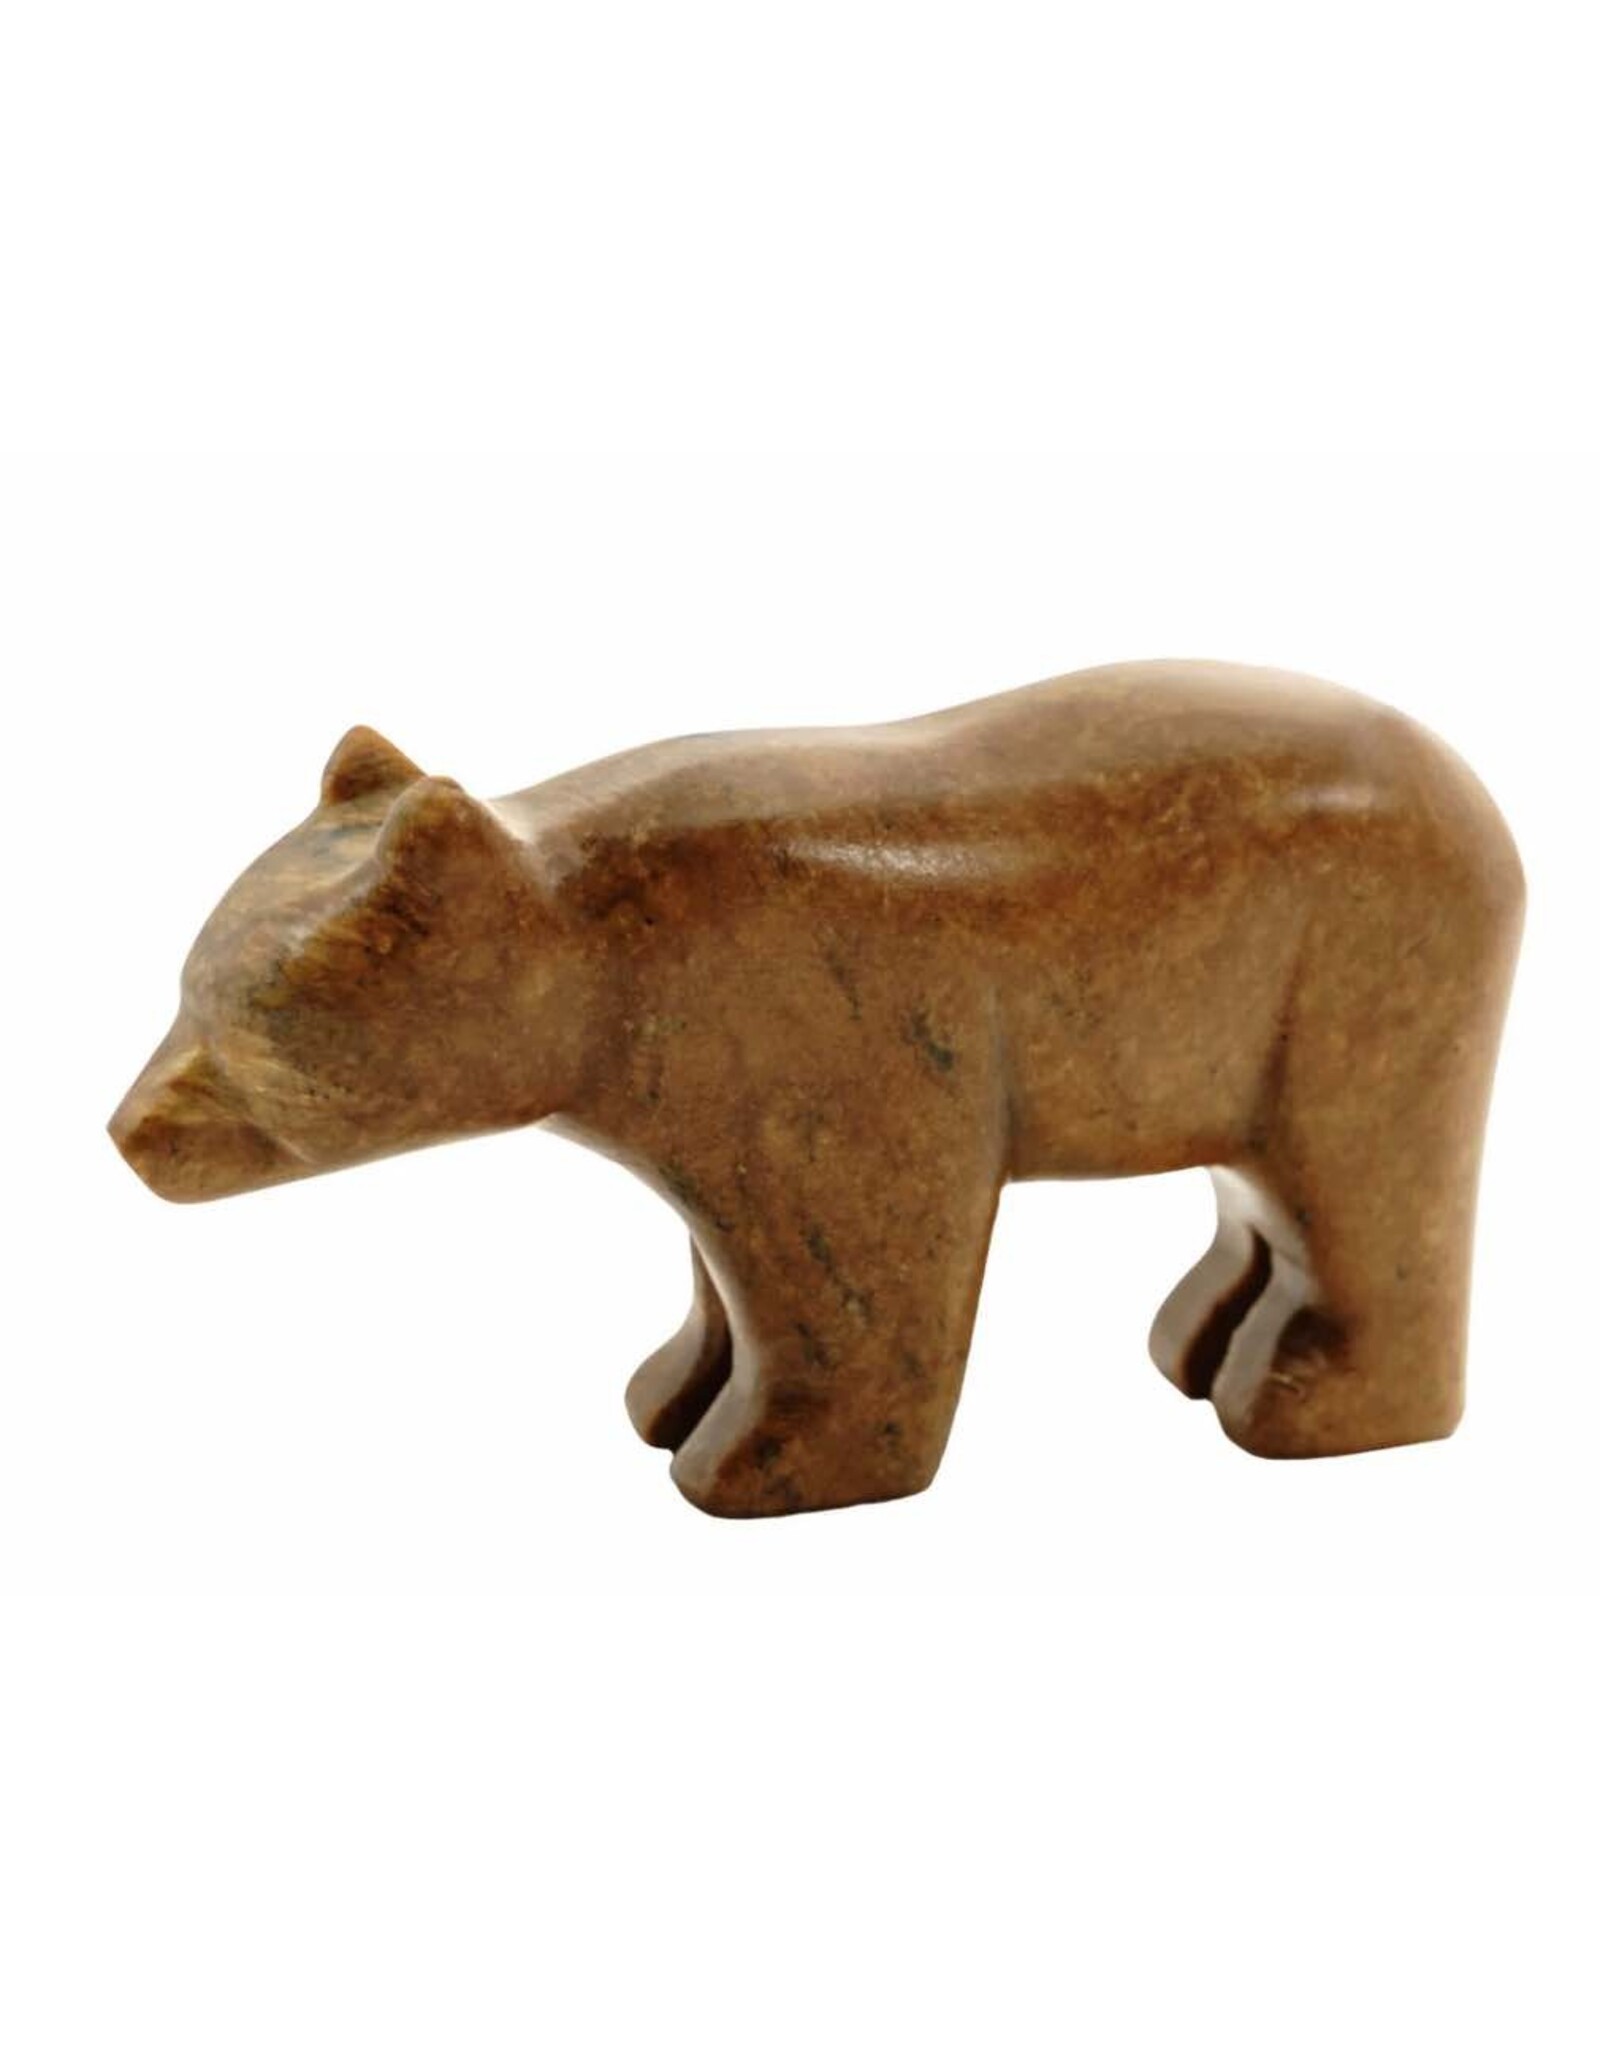 Soapstone DIY Carving Kit - Bear